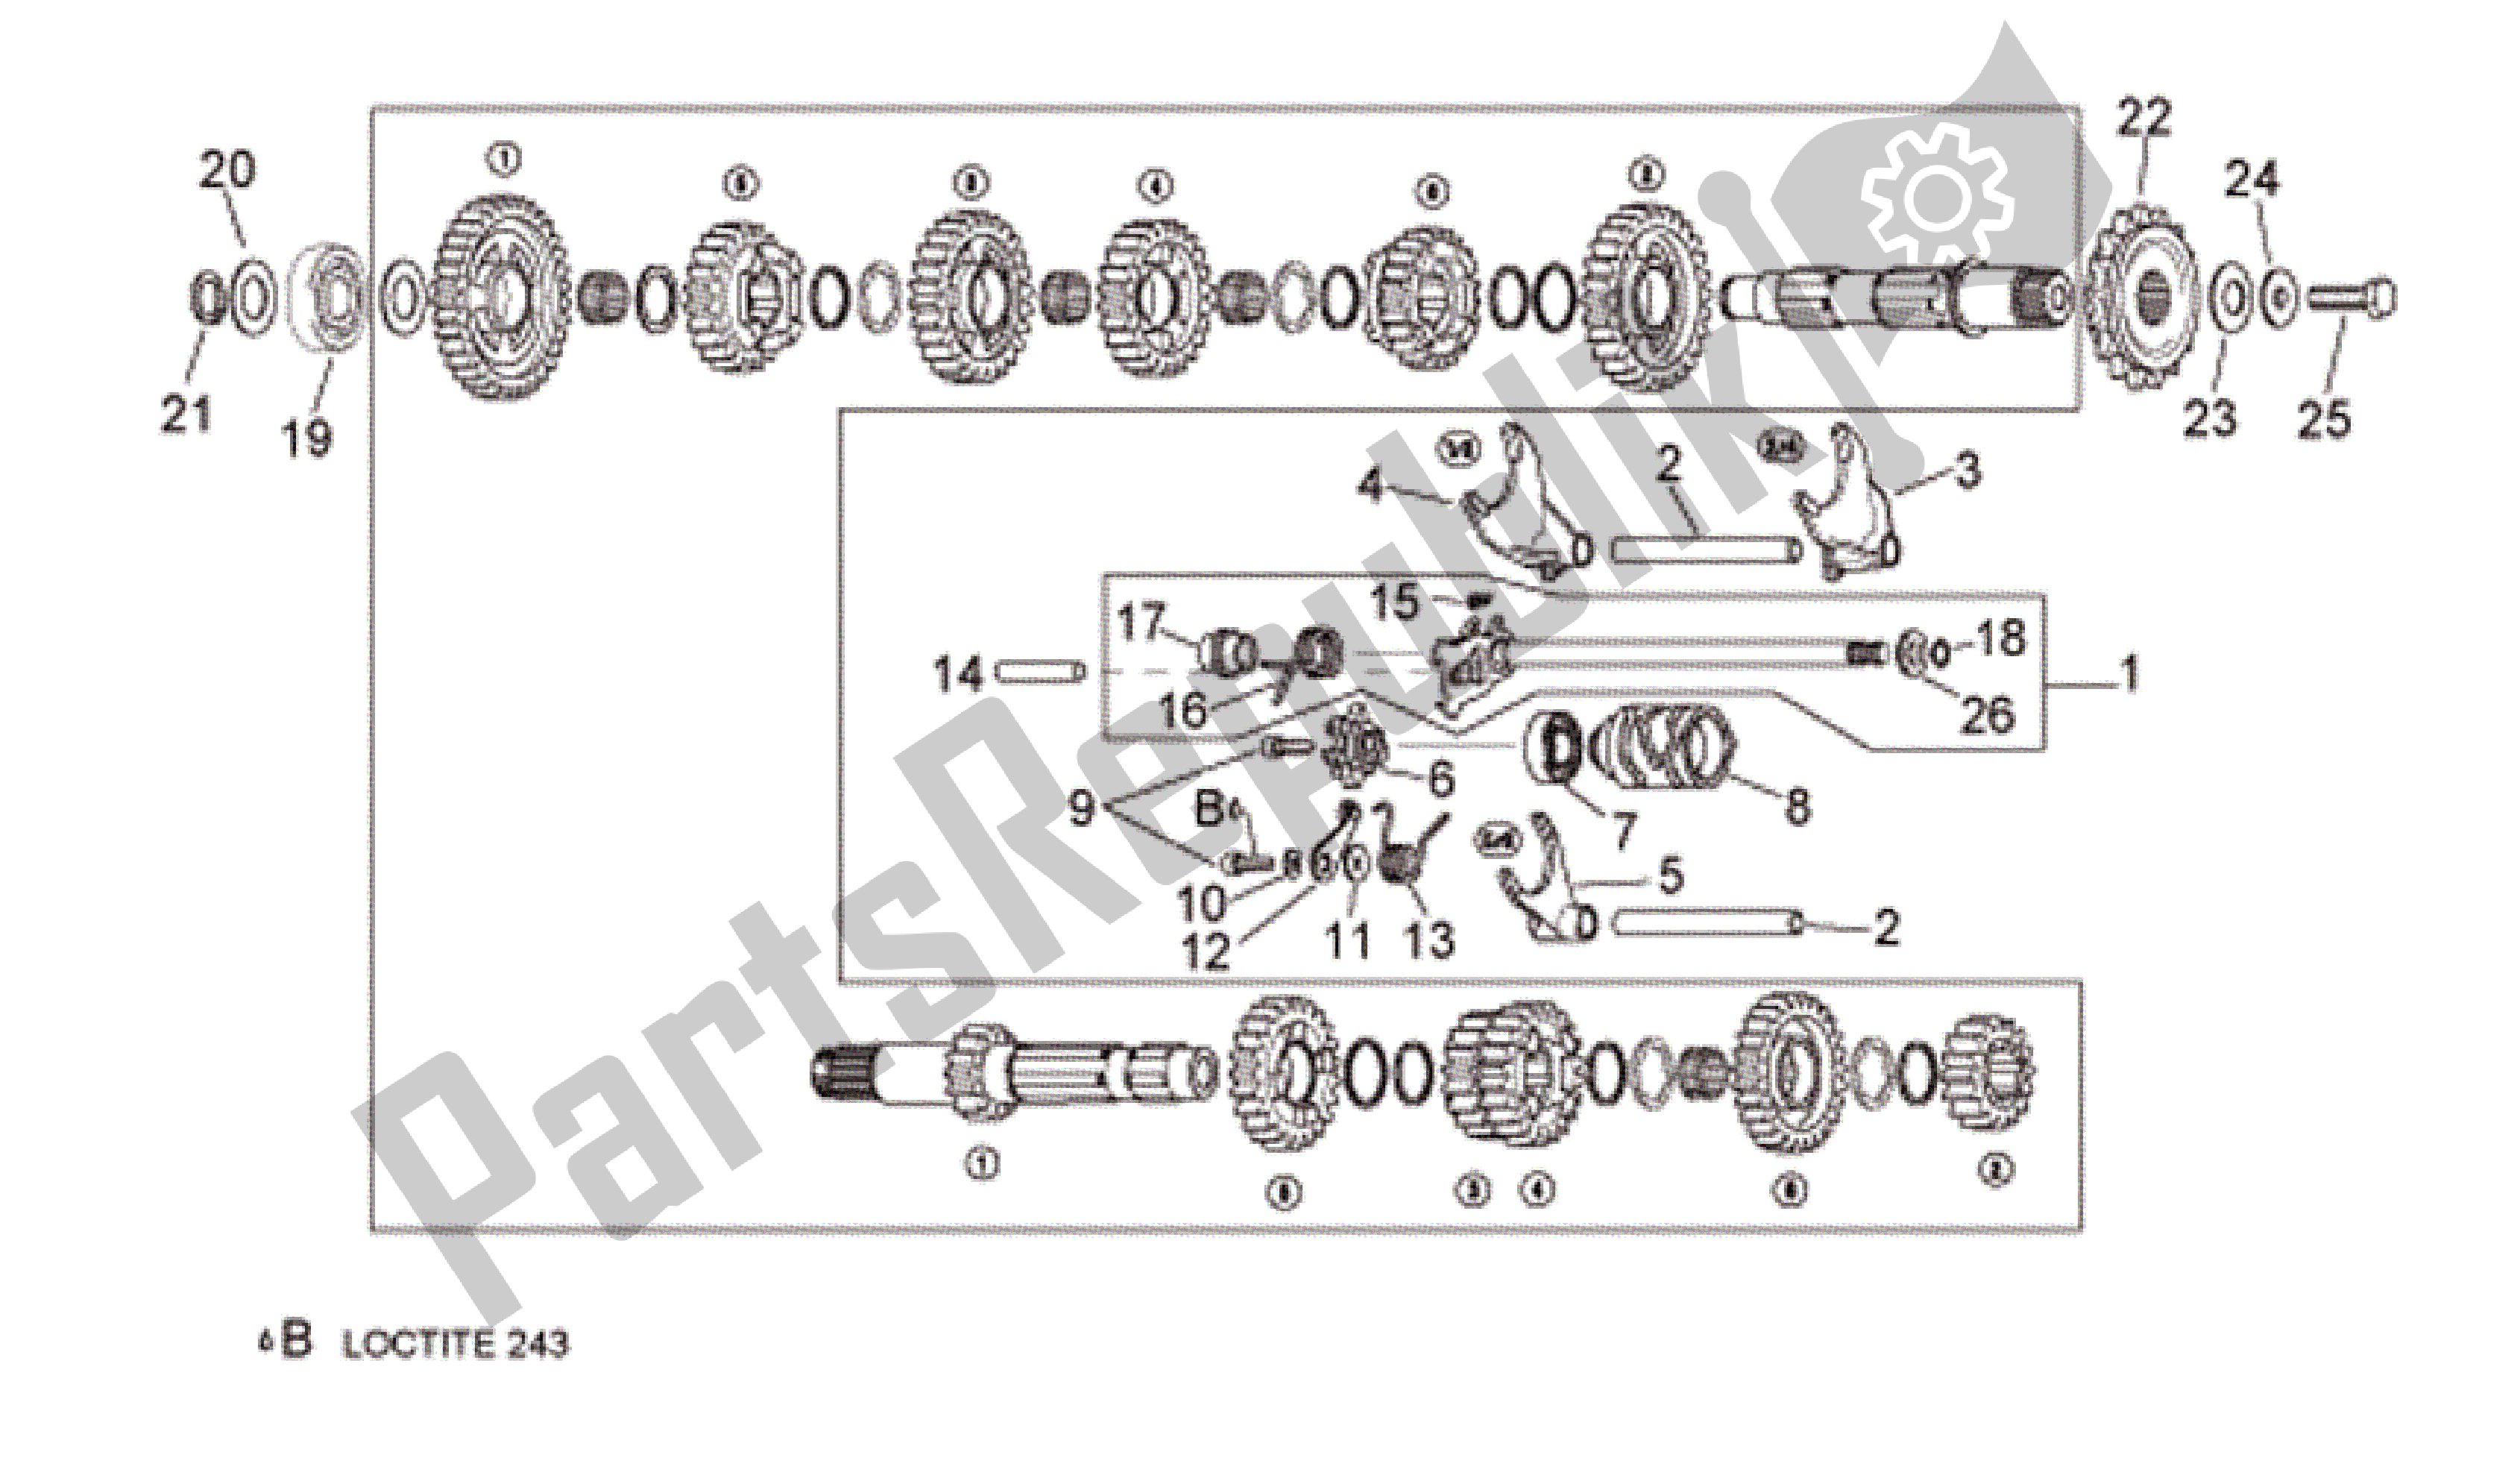 All parts for the Gear Box Selector of the Aprilia RSV Tuono R 3985 1000 2006 - 2009